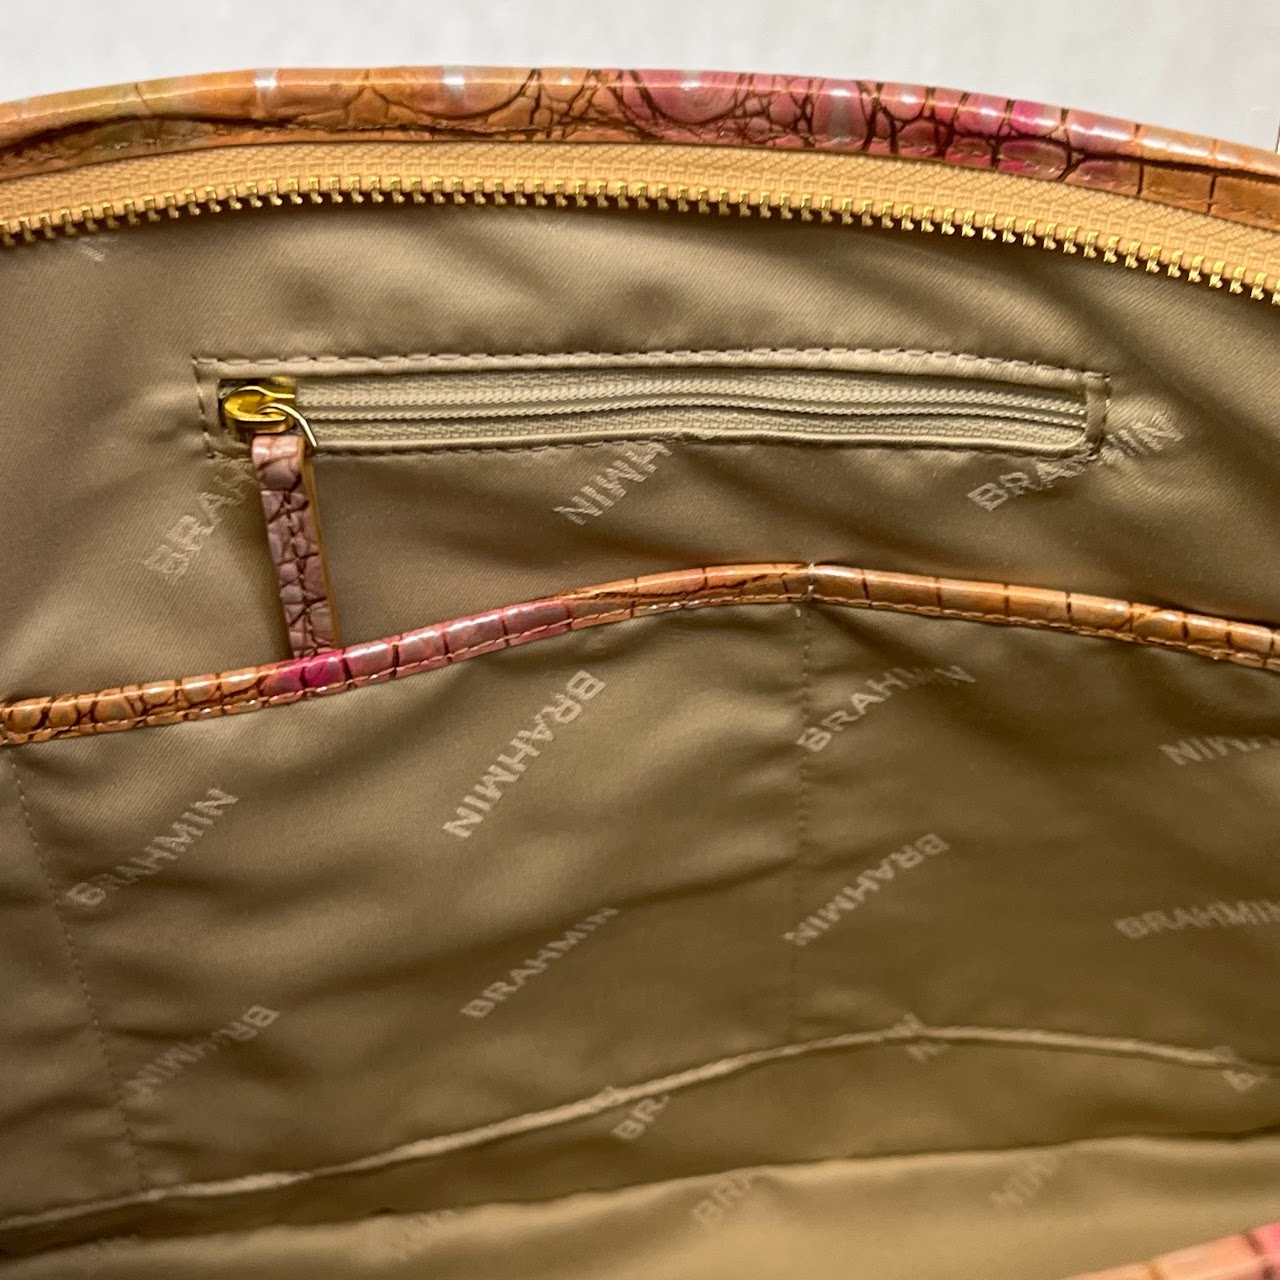 Brahmin Melbourne Asher Courage Handbag